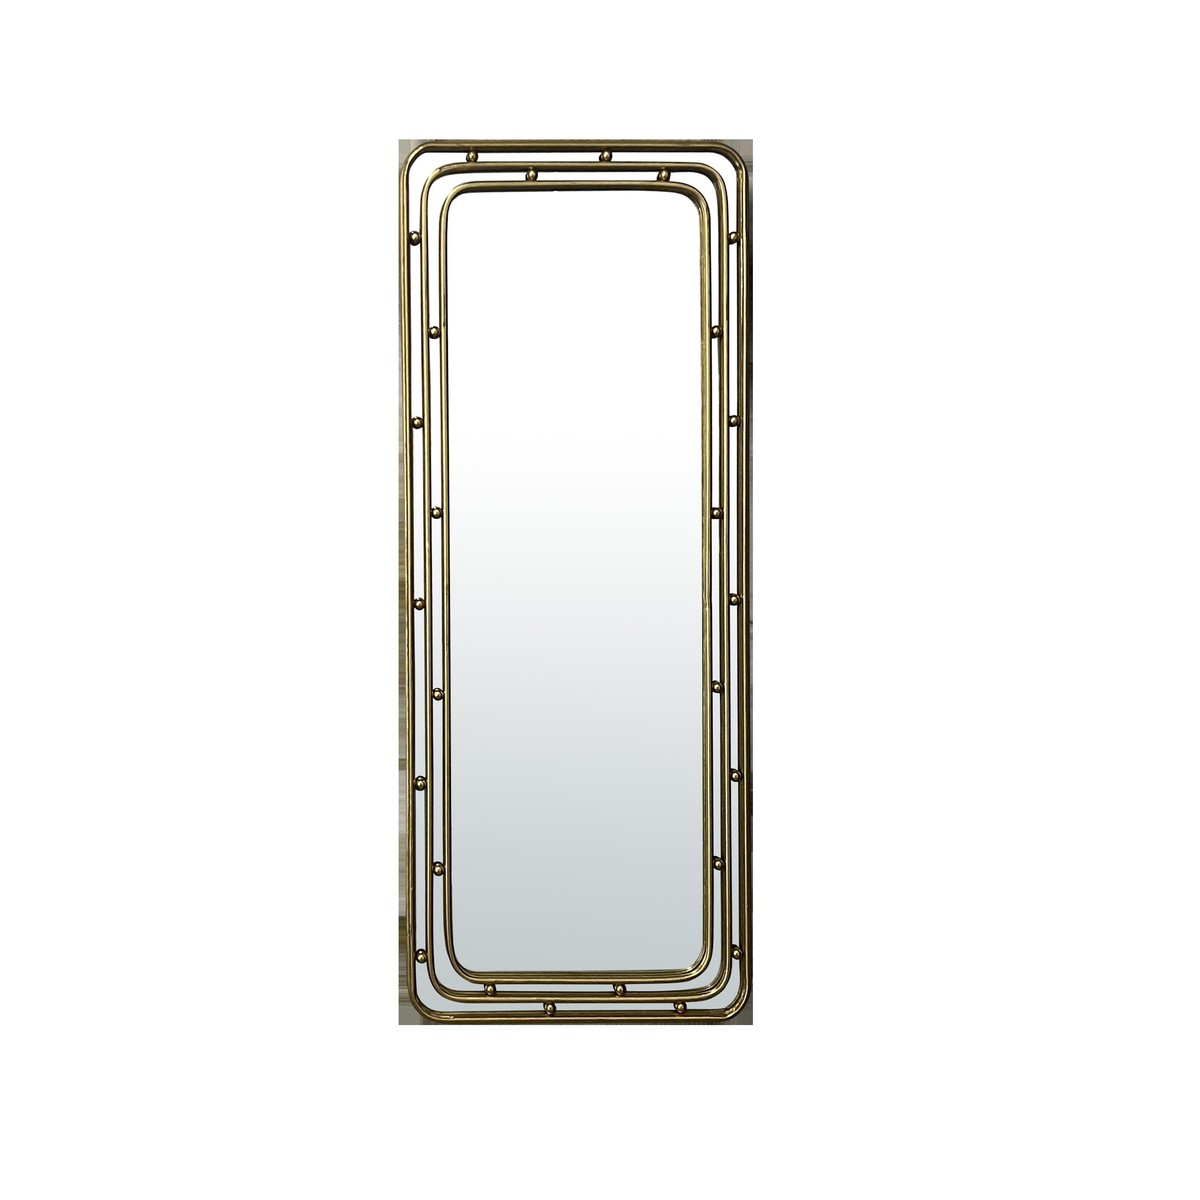   Miroir métal doré arrondi 50x120cm  50x120cm